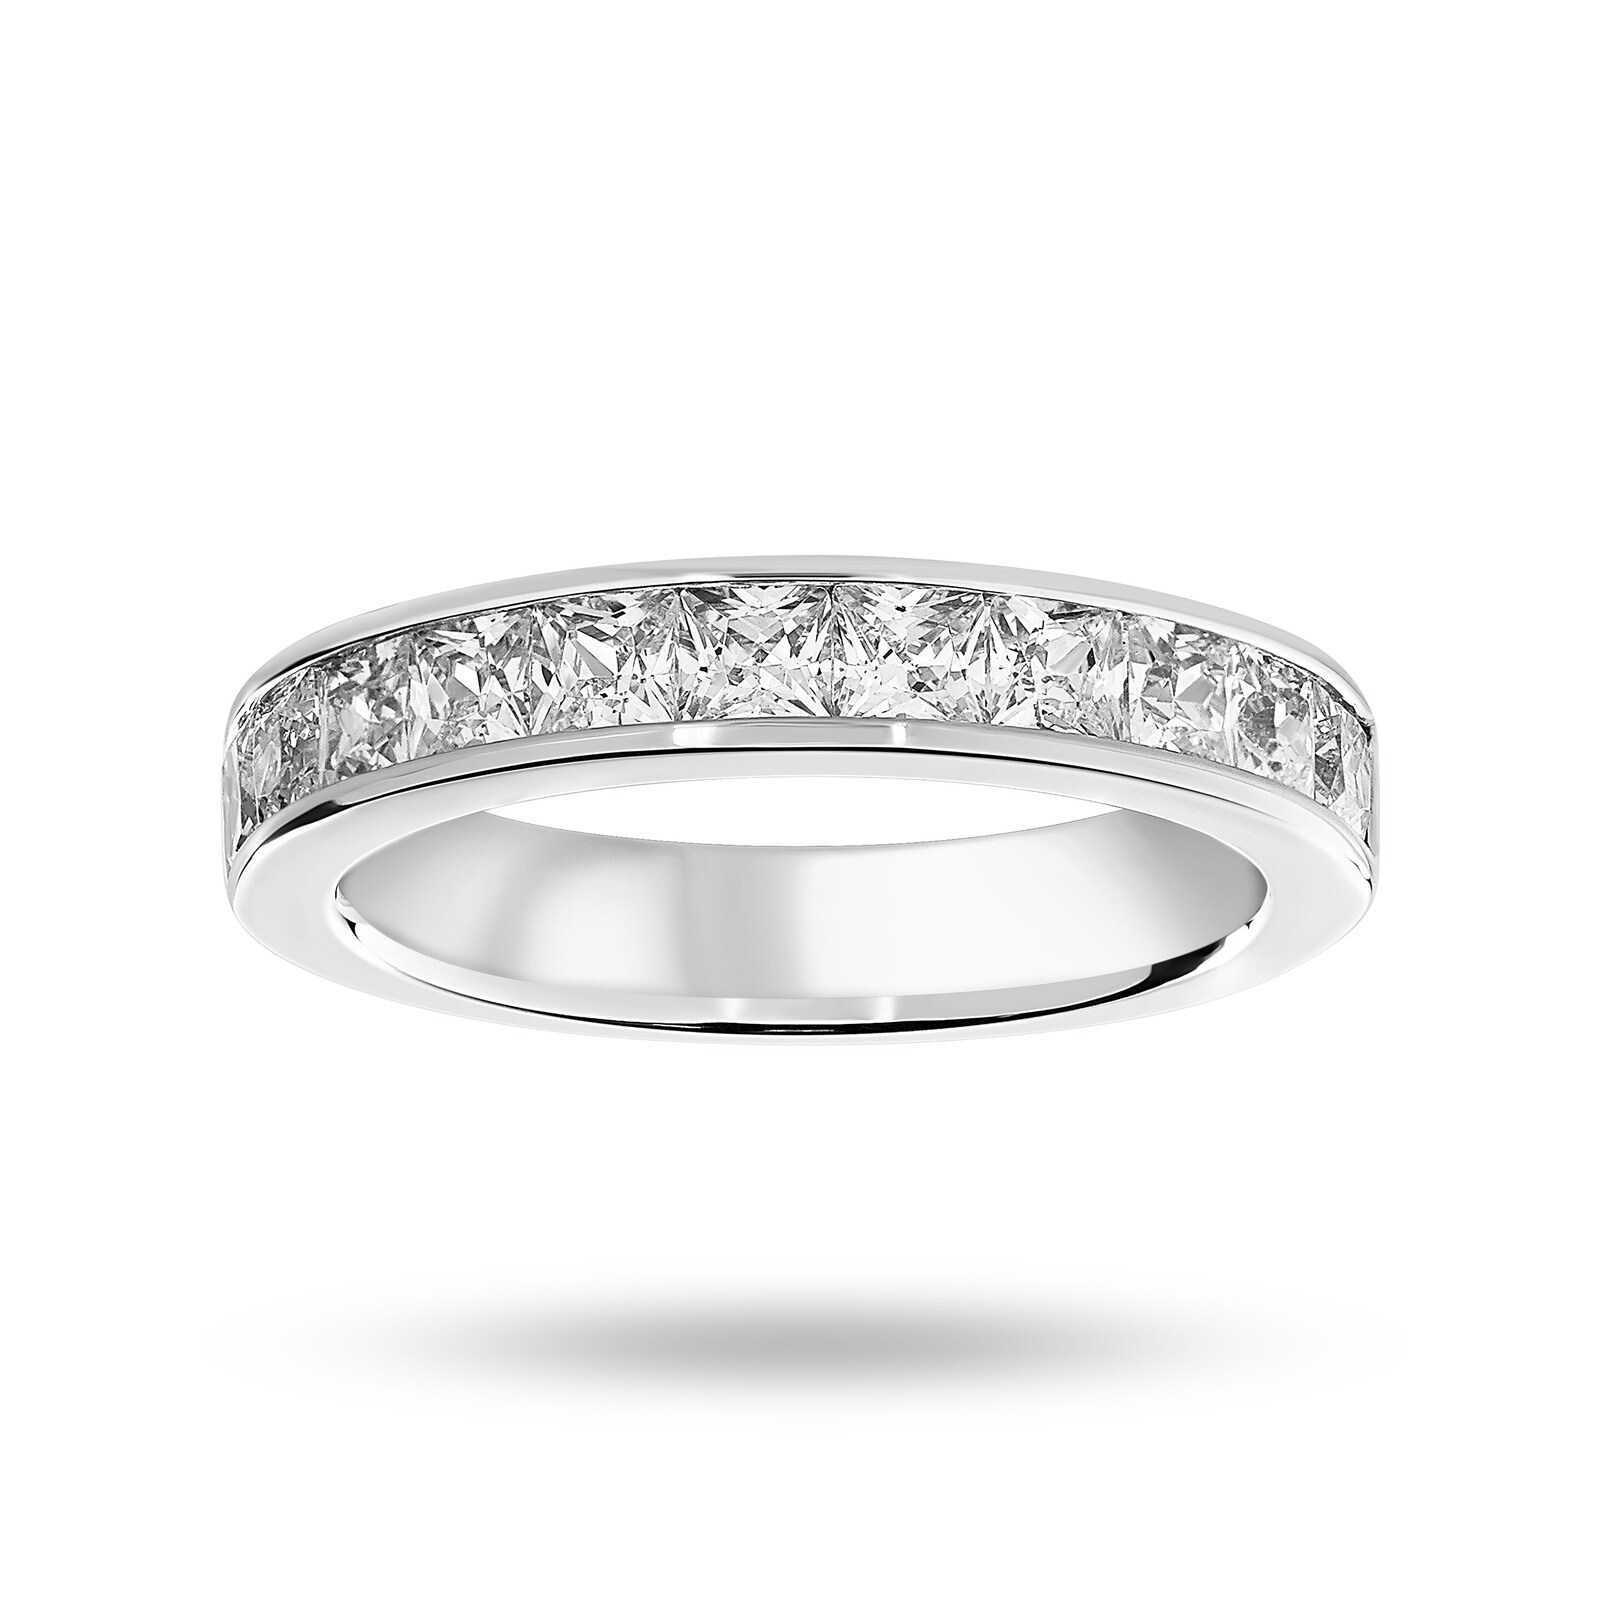 18 Carat White Gold 1.50 Carat Princess Cut Half Eternity Ring - Ring Size J